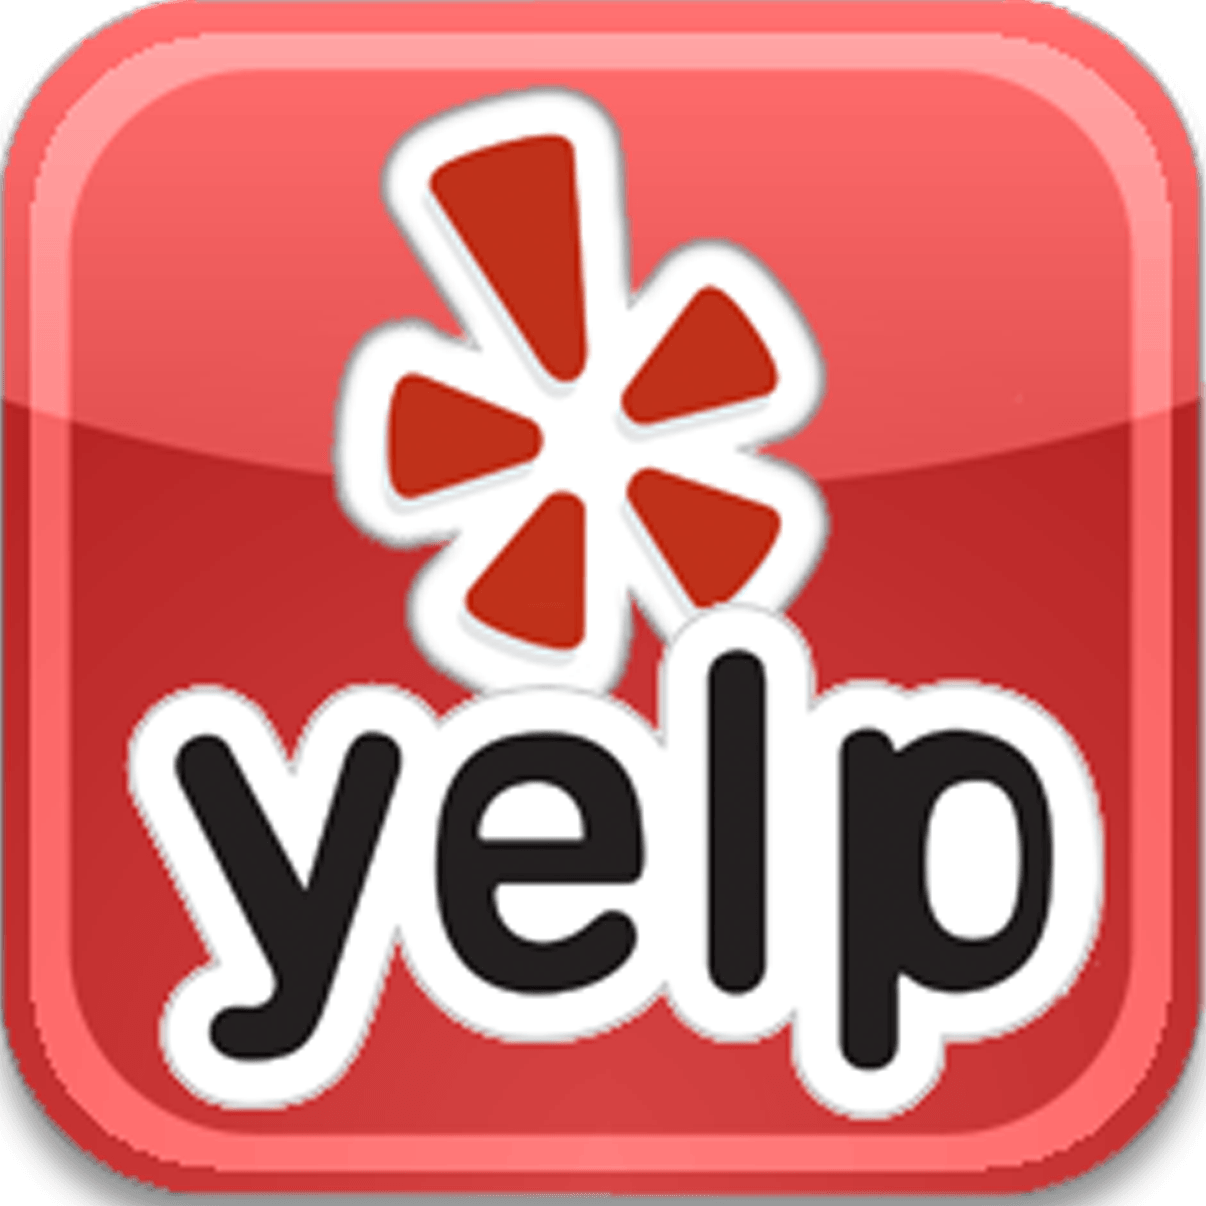 Yelp Transparent Logo - Yelp Logo - Free Transparent PNG Logos